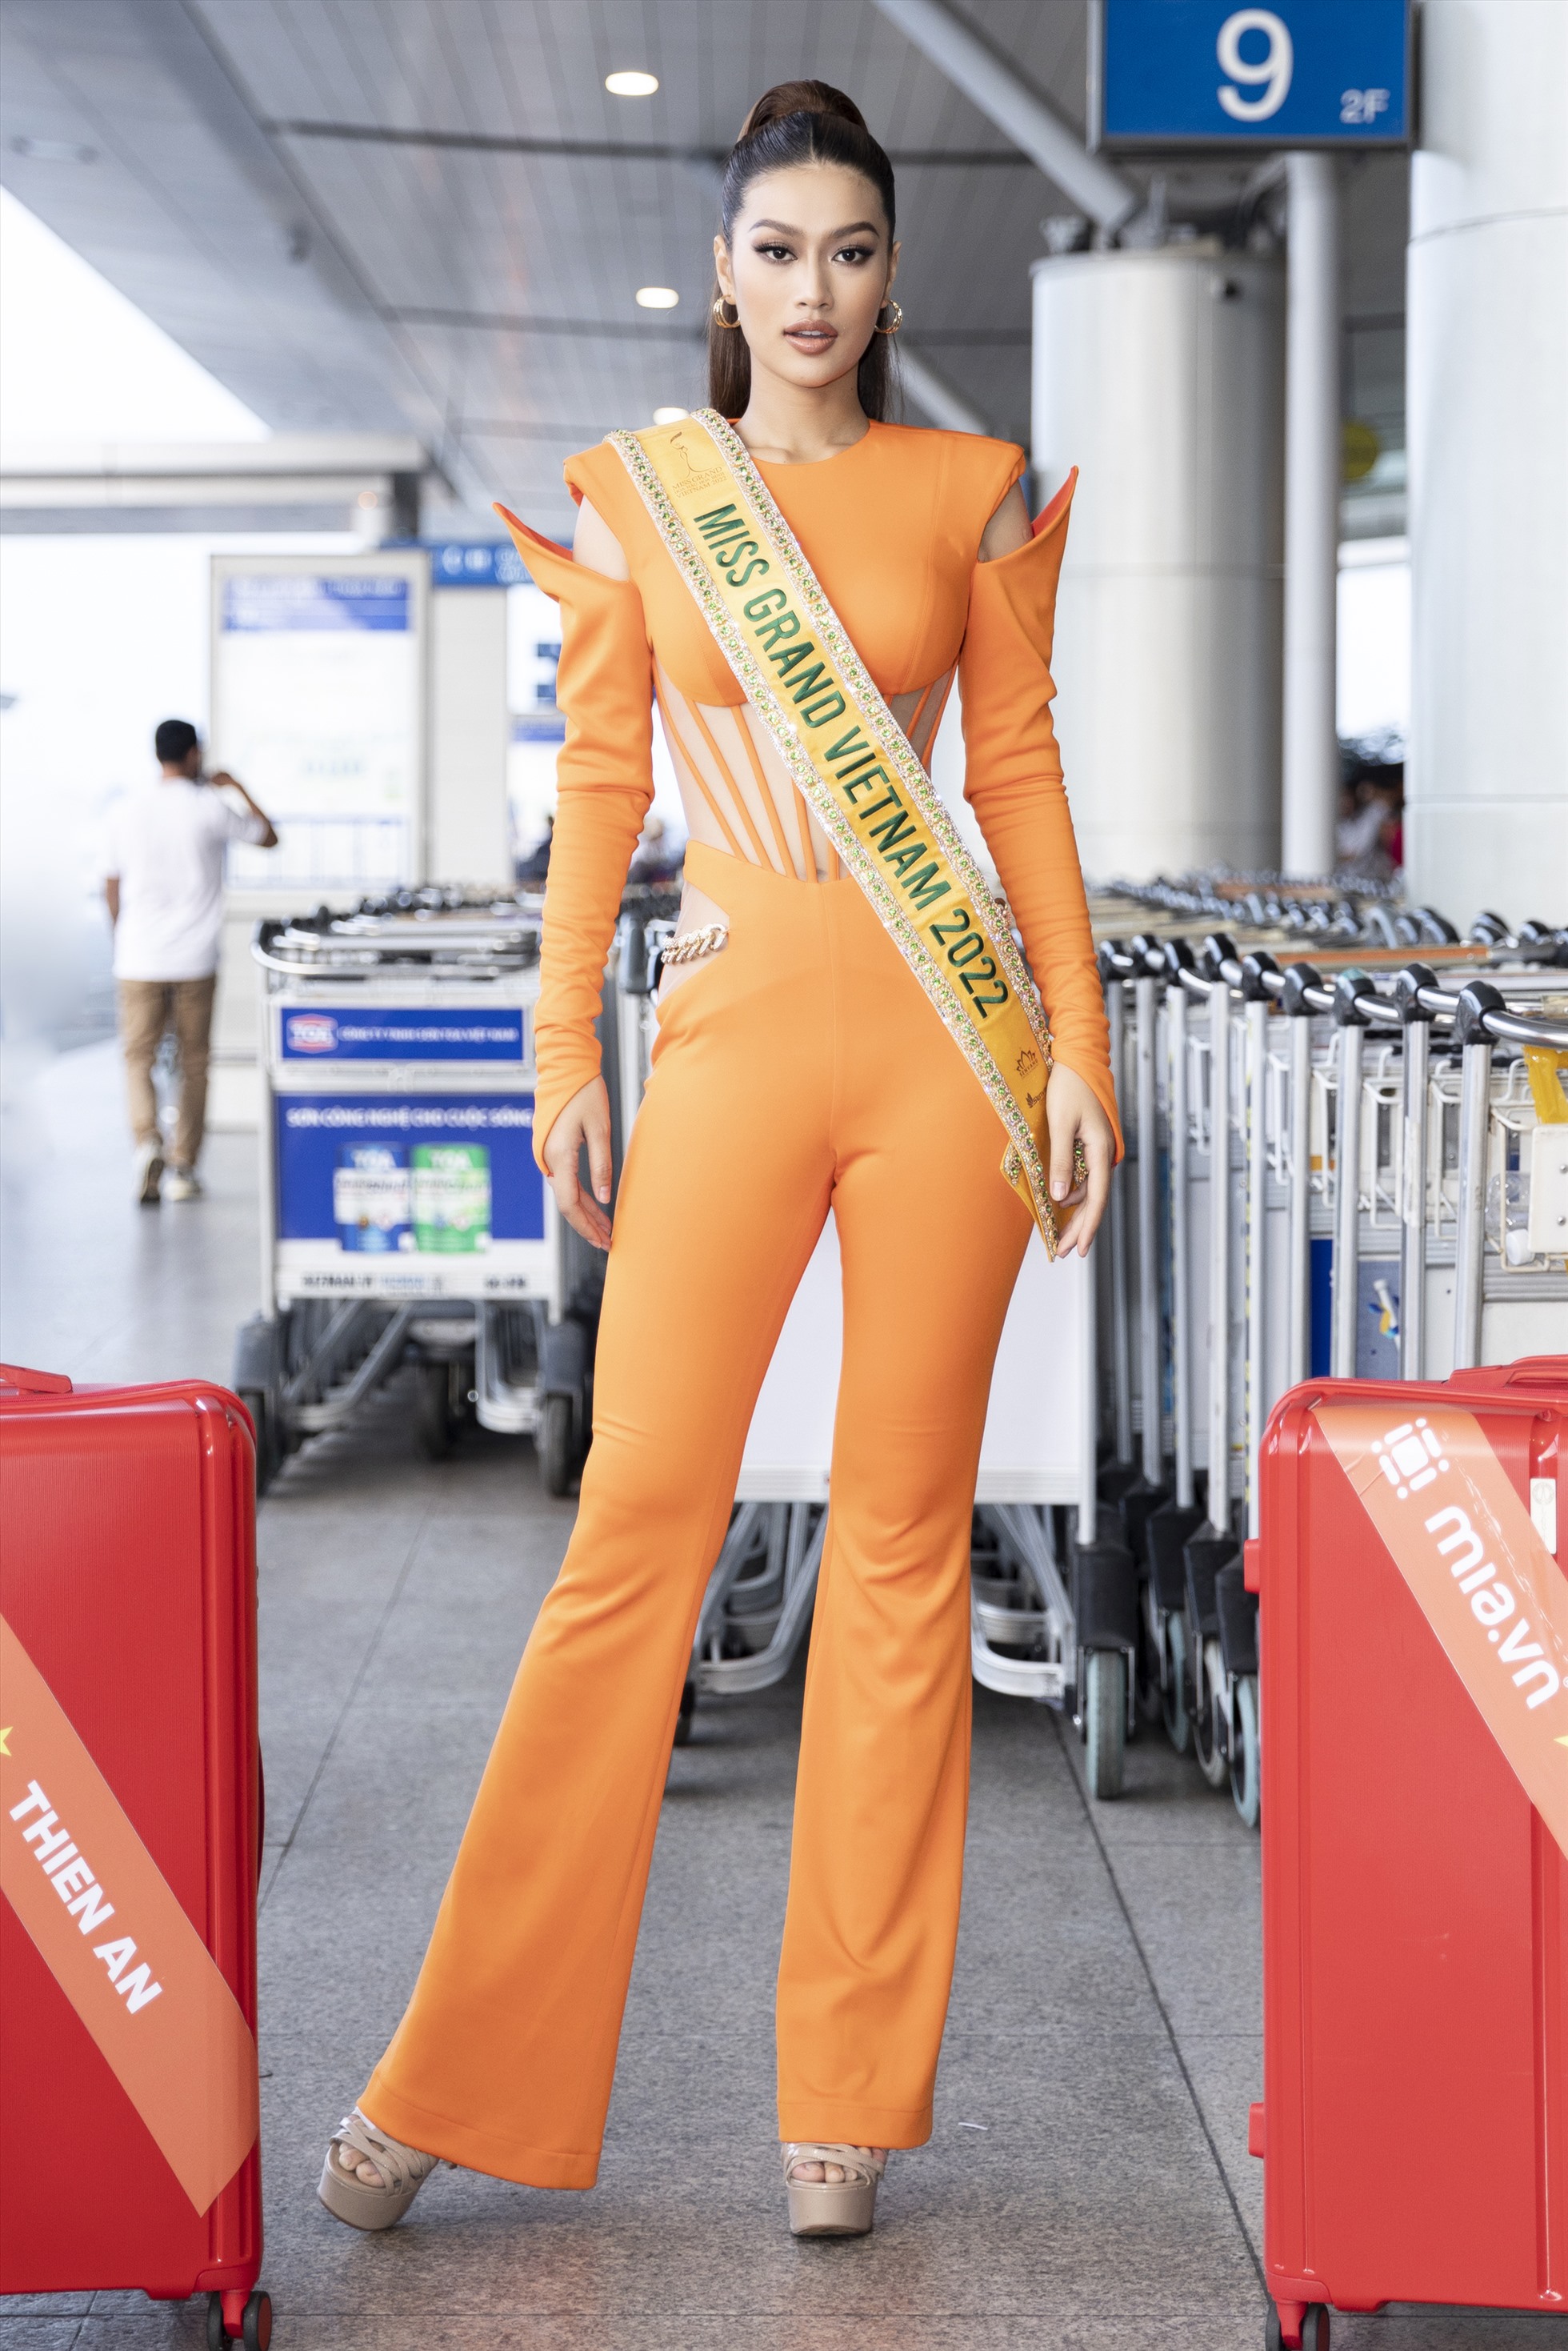 Mặc dù vậy nhưng 6 giờ sáng nay tại sân bay, Thiên  Ân vẫn xuất hiện với vẻ ngoài rạng rỡ tươi tắn. Cô chọn cho mình thiết kế tông cam nổi bật đến từ NTK Tăng Thành Công. Cùng với đó mang theo chiếc sash đại diện “Miss Grand Vietnam” và lá cờ Việt Nam đầy tự hào. Ảnh: NVCC.